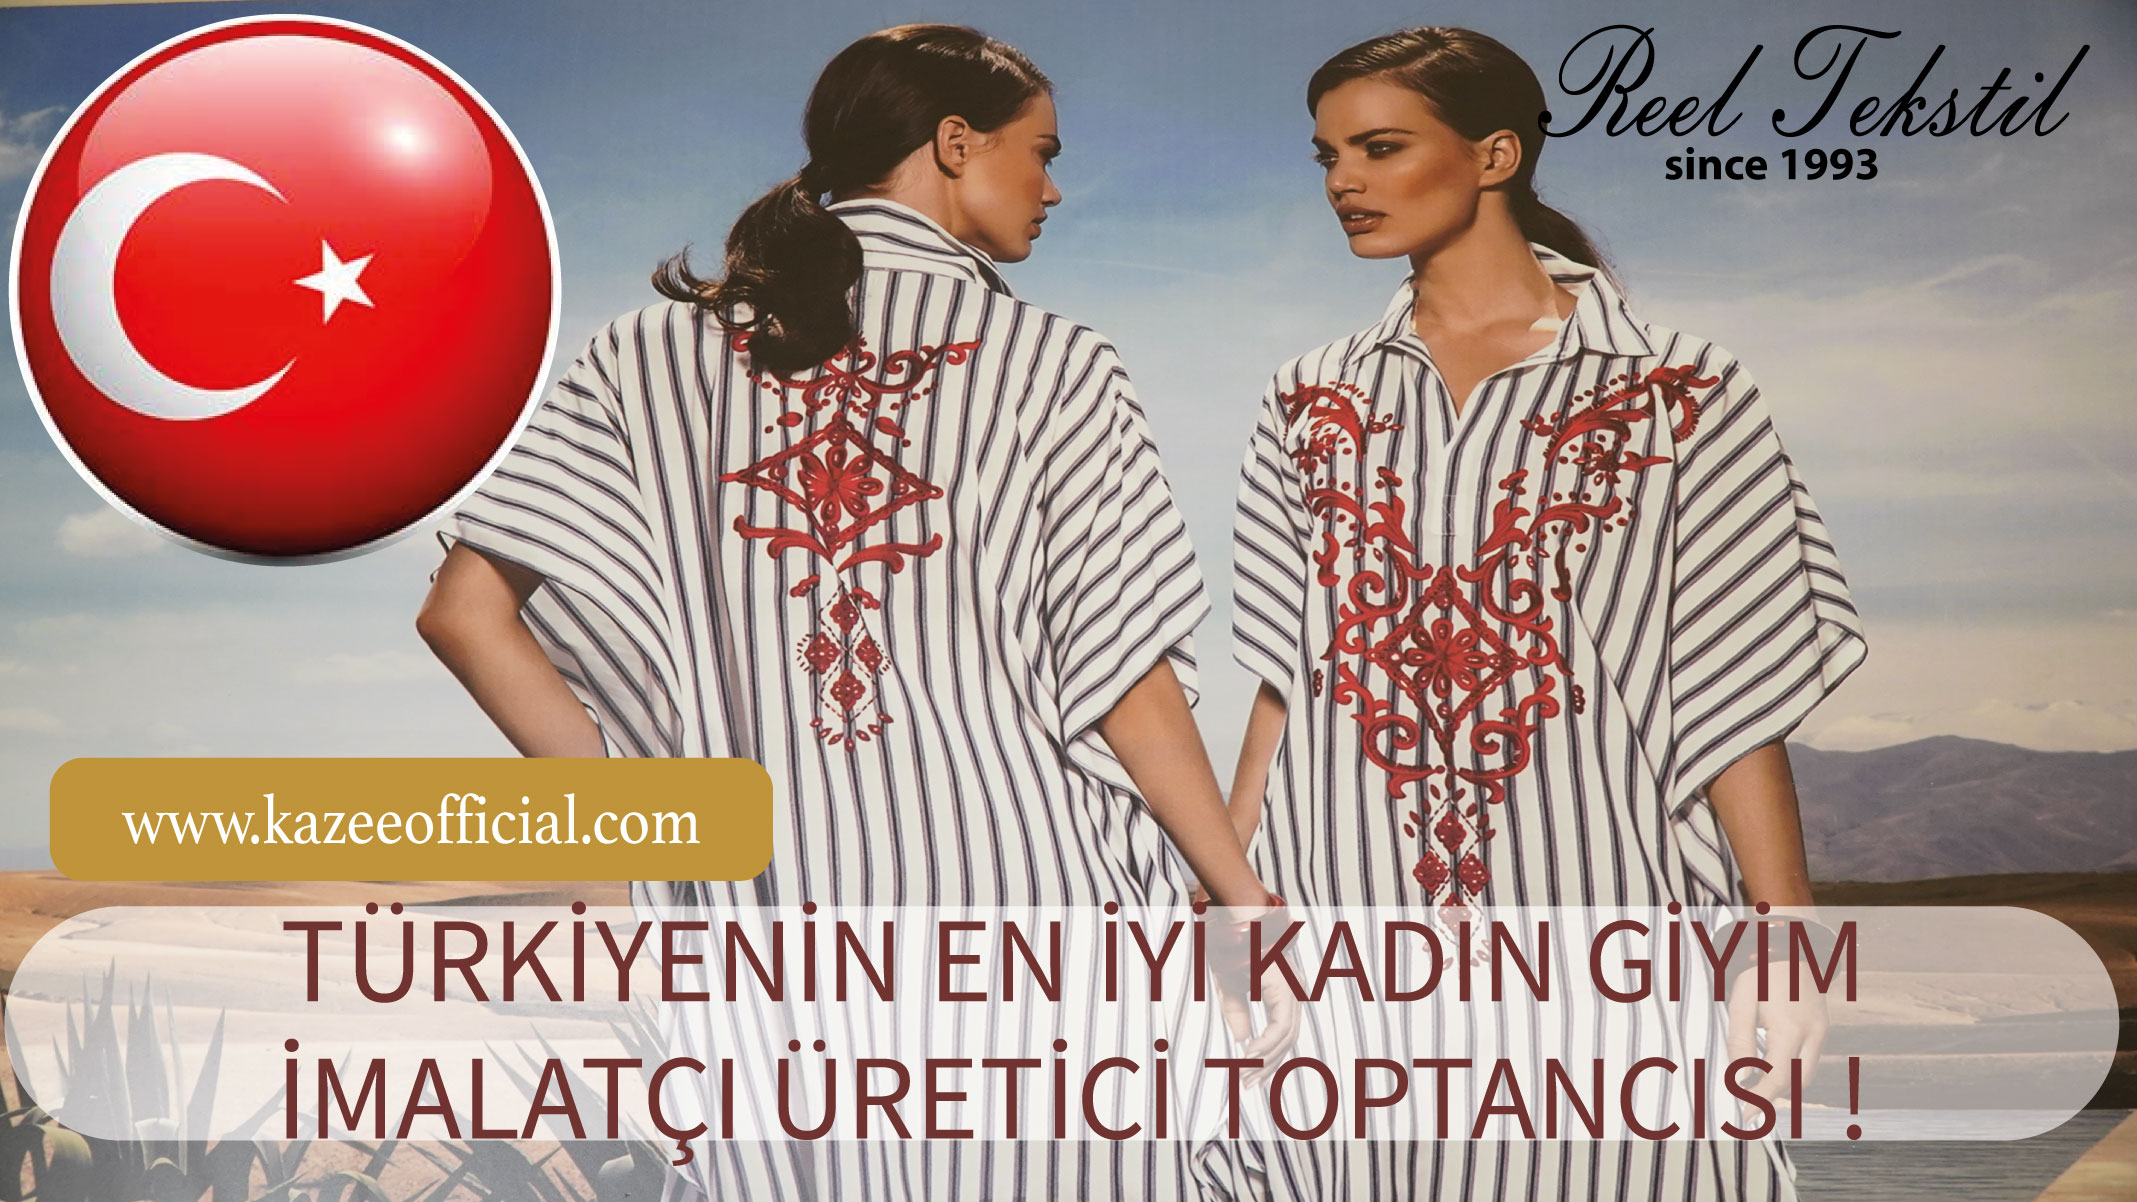 أفضل تاجر جملة لبيع الملابس النسائية في تركيا! 